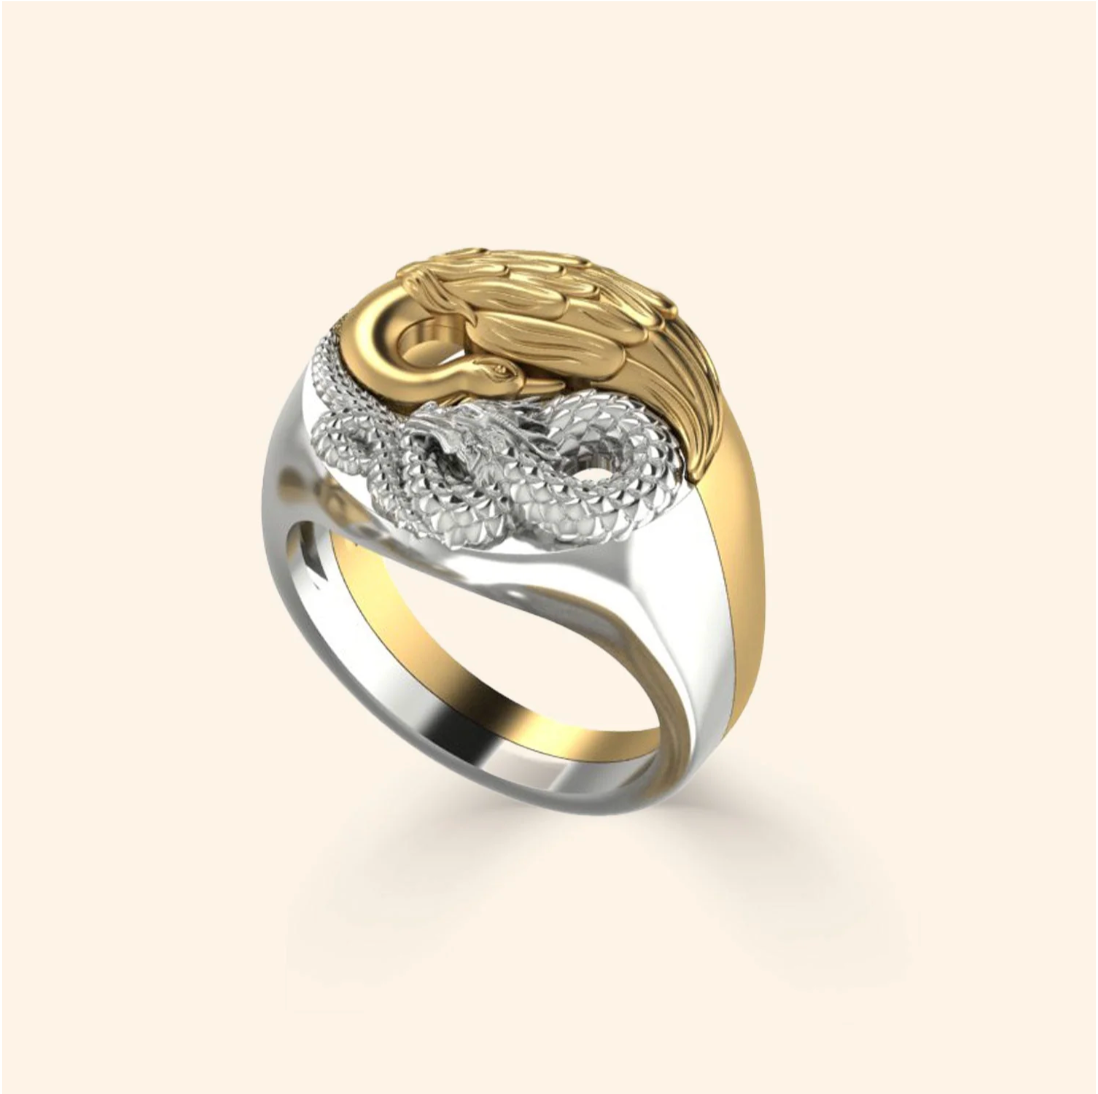 Yin Yang Dragon + Phoenix Ring Set